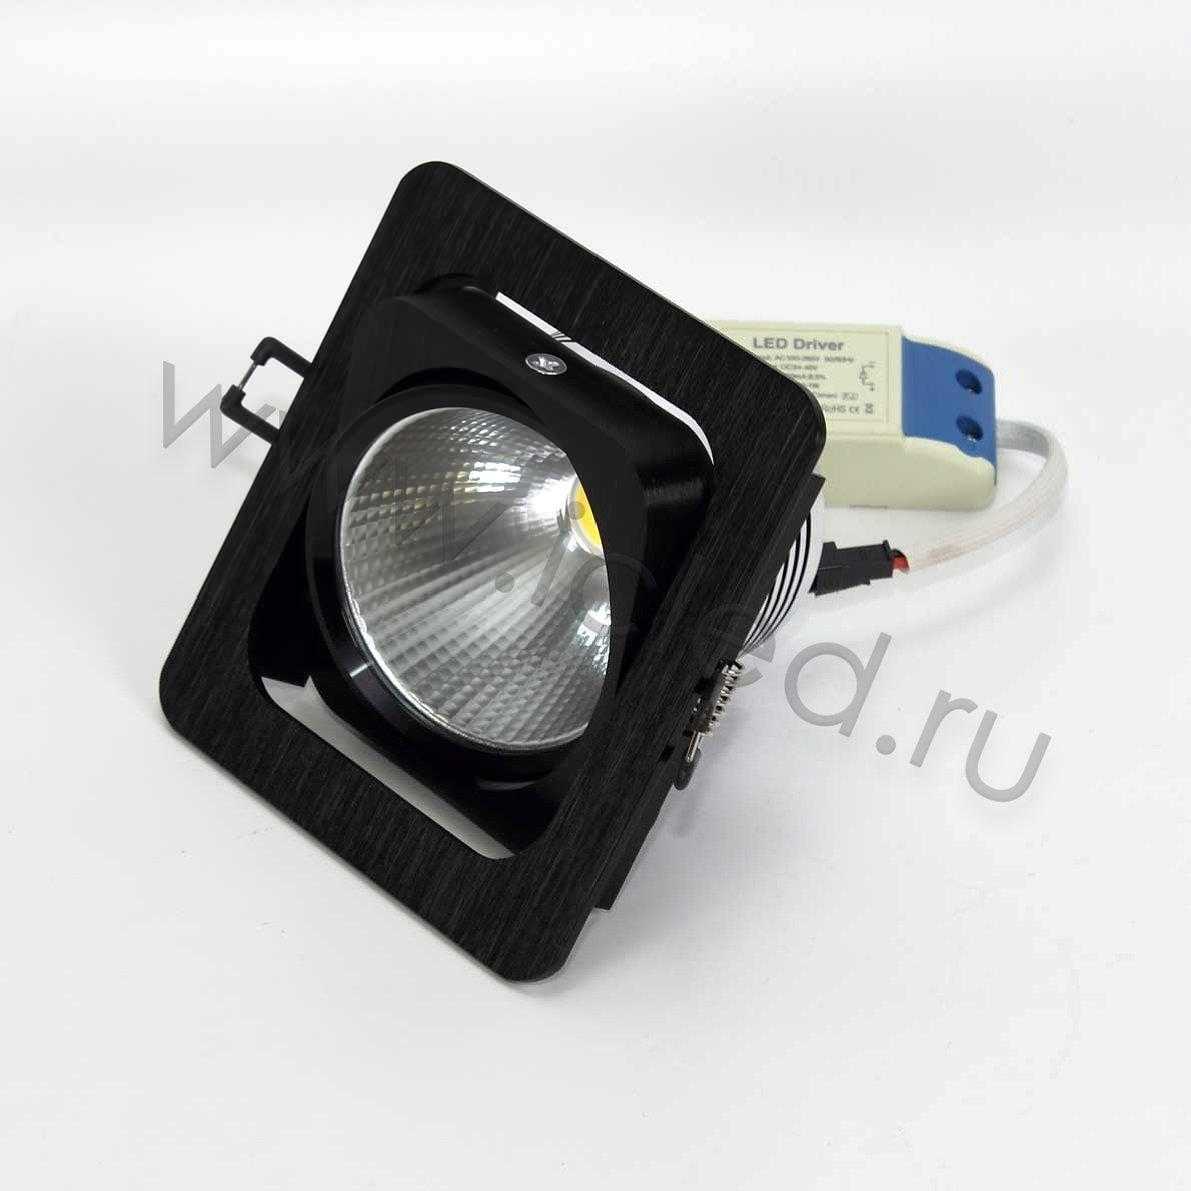 Светодиодные светильники Светодиодный светильник встраиваемый 120.1 series black housing BW142 (10W,220V,day white)